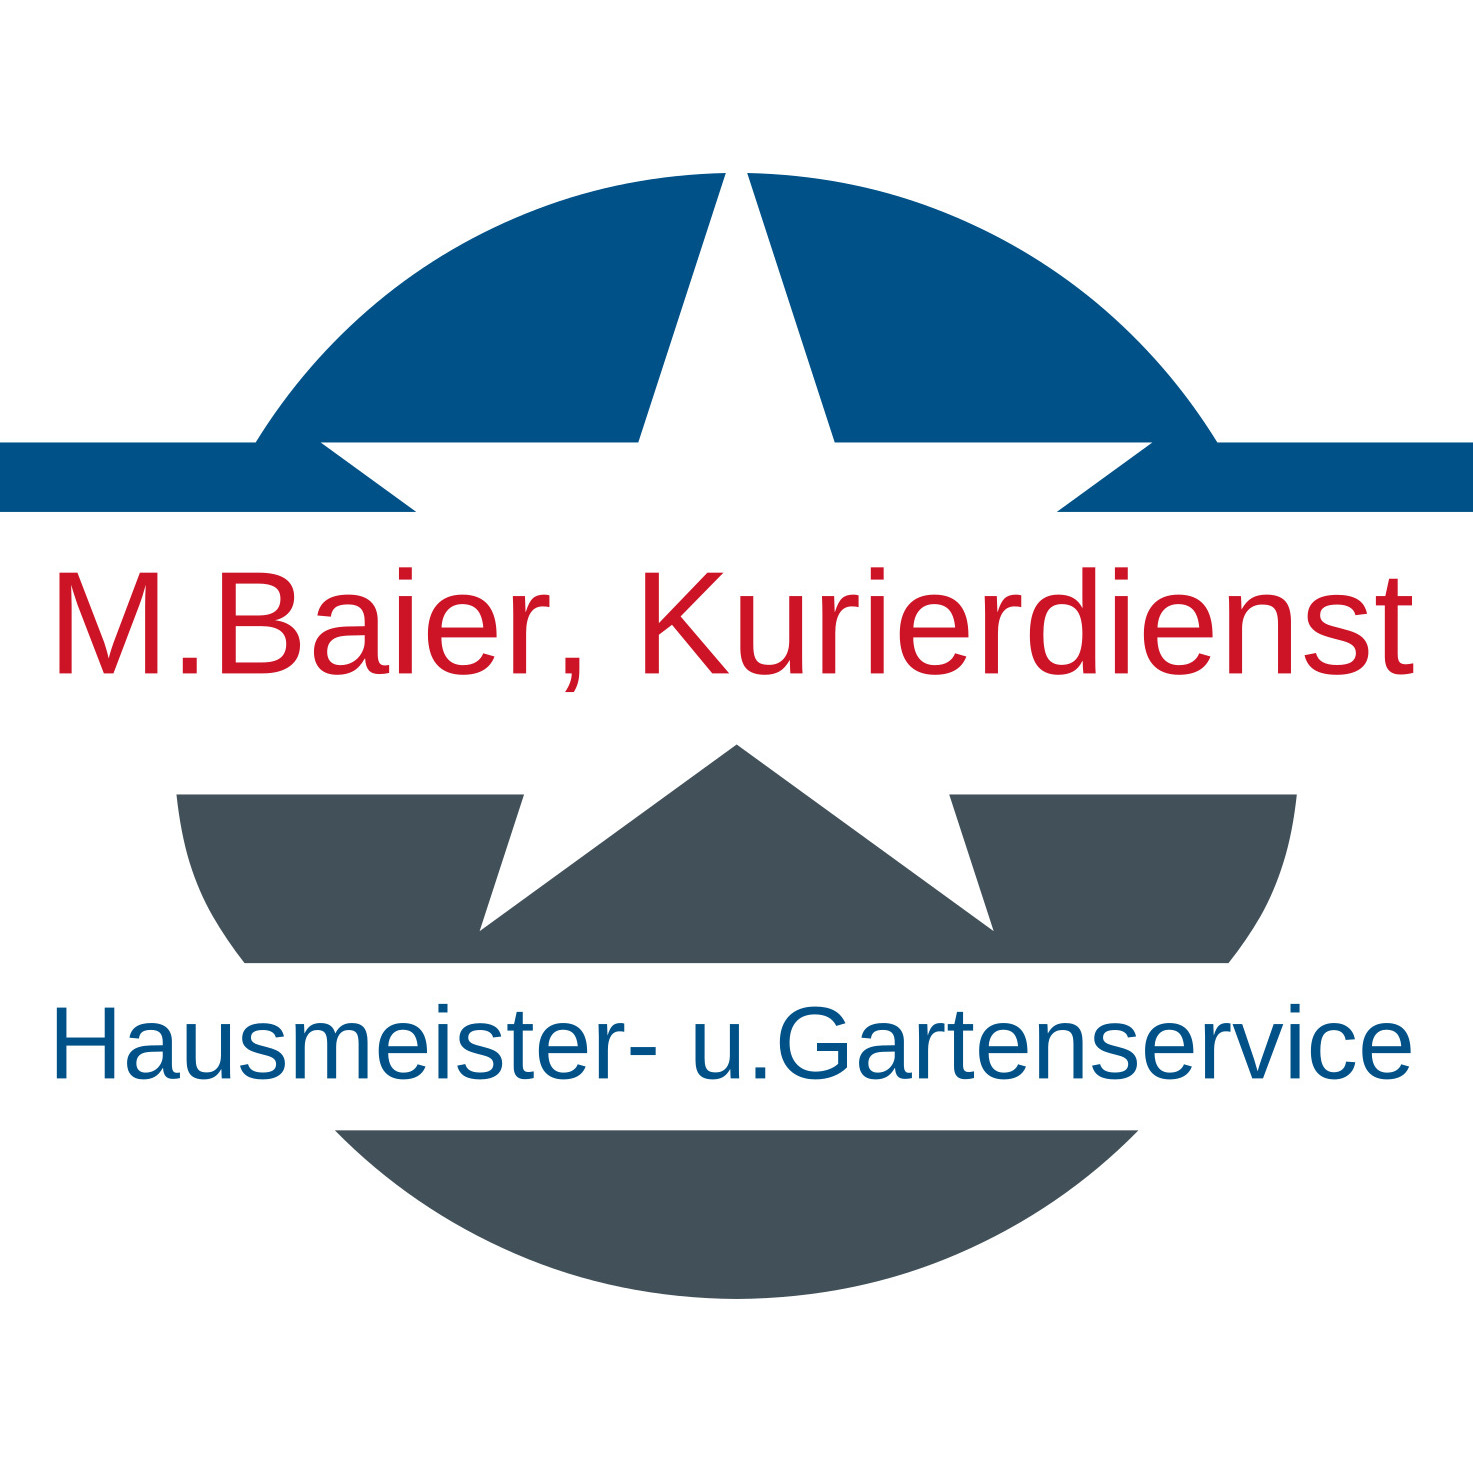 M. Baier, Kurierdienst, Hausmeister-und Gartenservice Logo